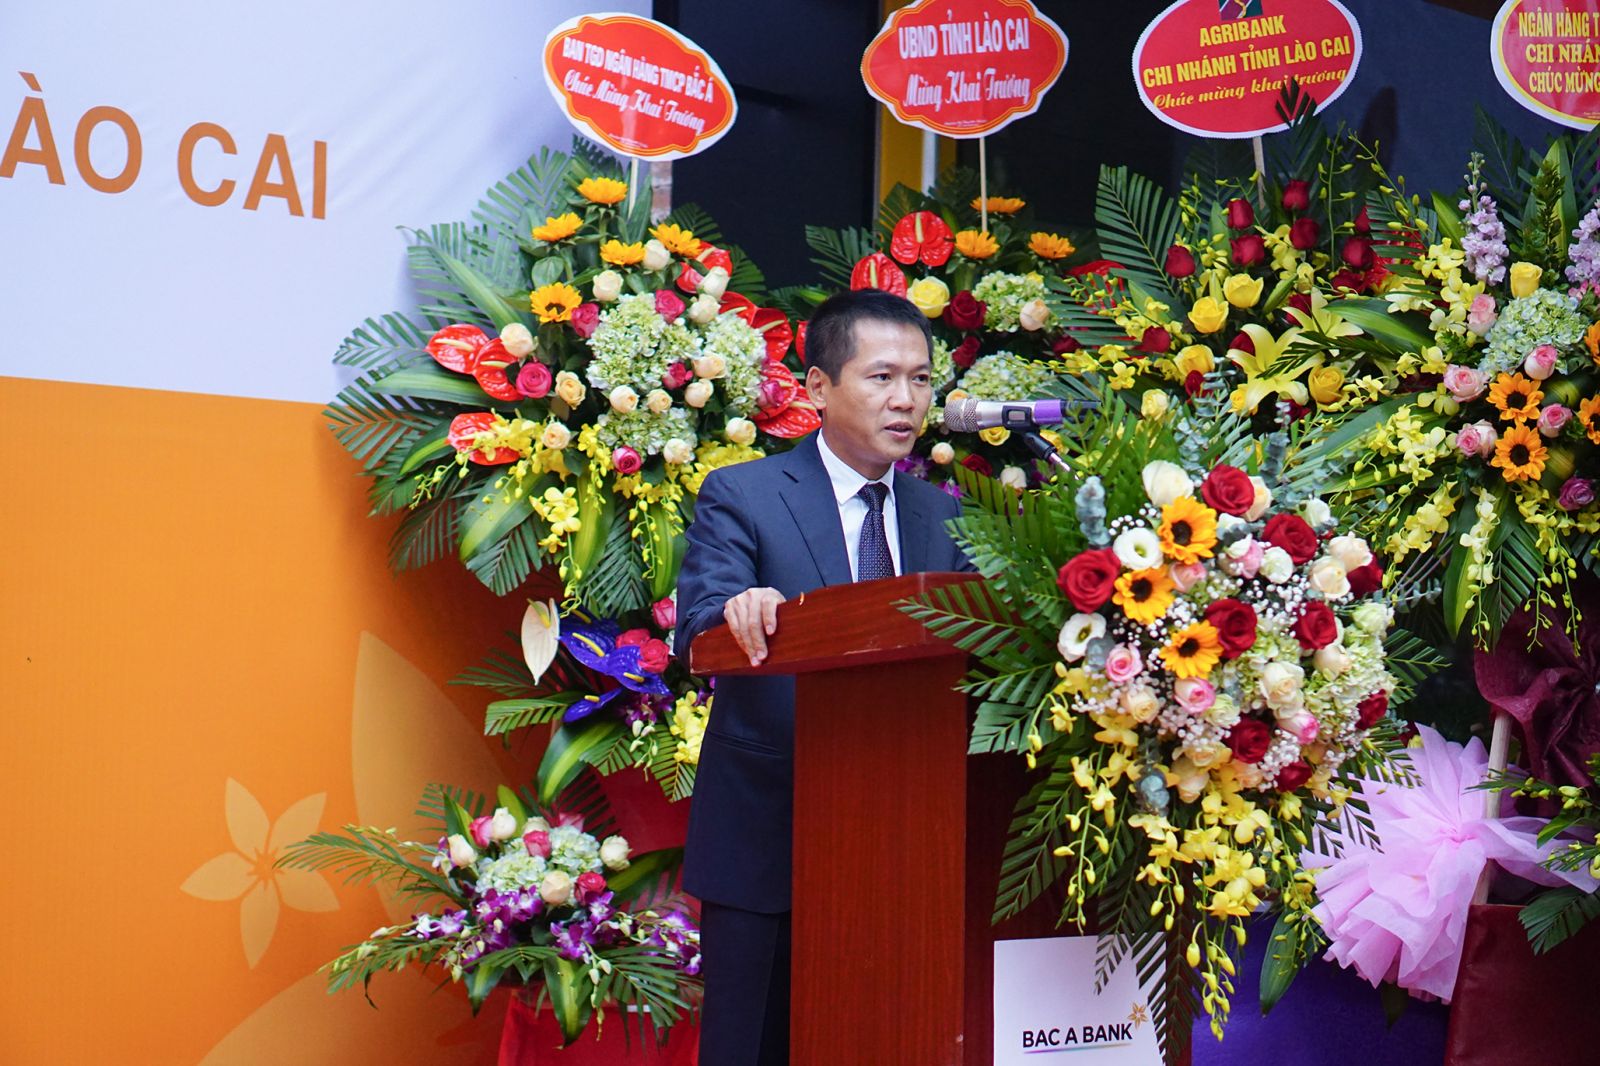 Ông Đặng Trung Dũng, Phó Tổng giám đốc thường trực Bac A Bank, phát biểu trong Lễ Khai trương Chi nhánh Lào Cai